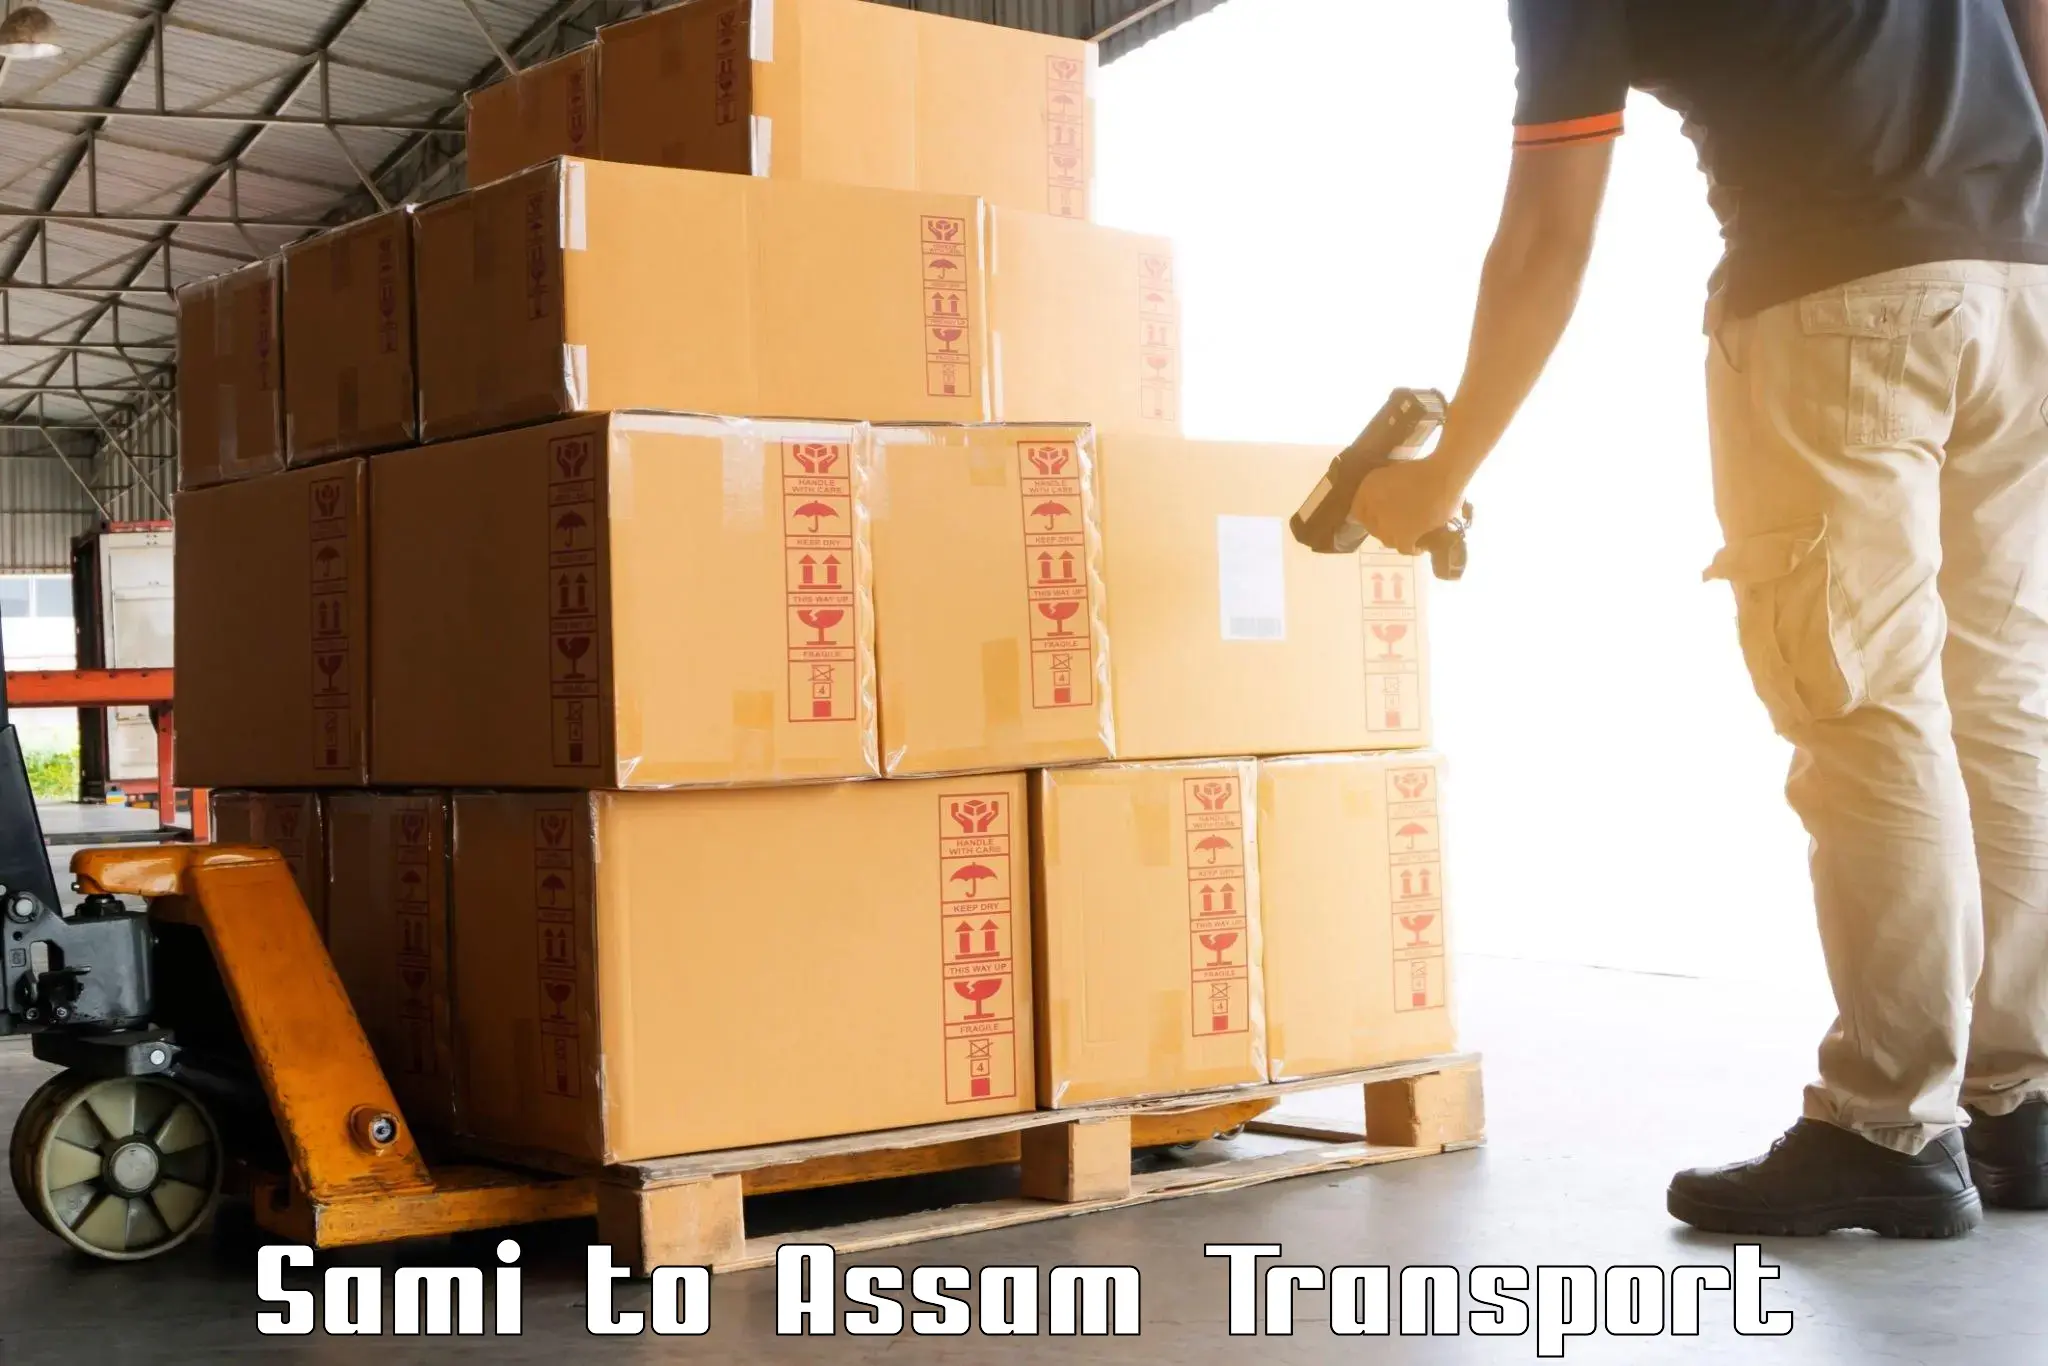 Parcel transport services Sami to Assam